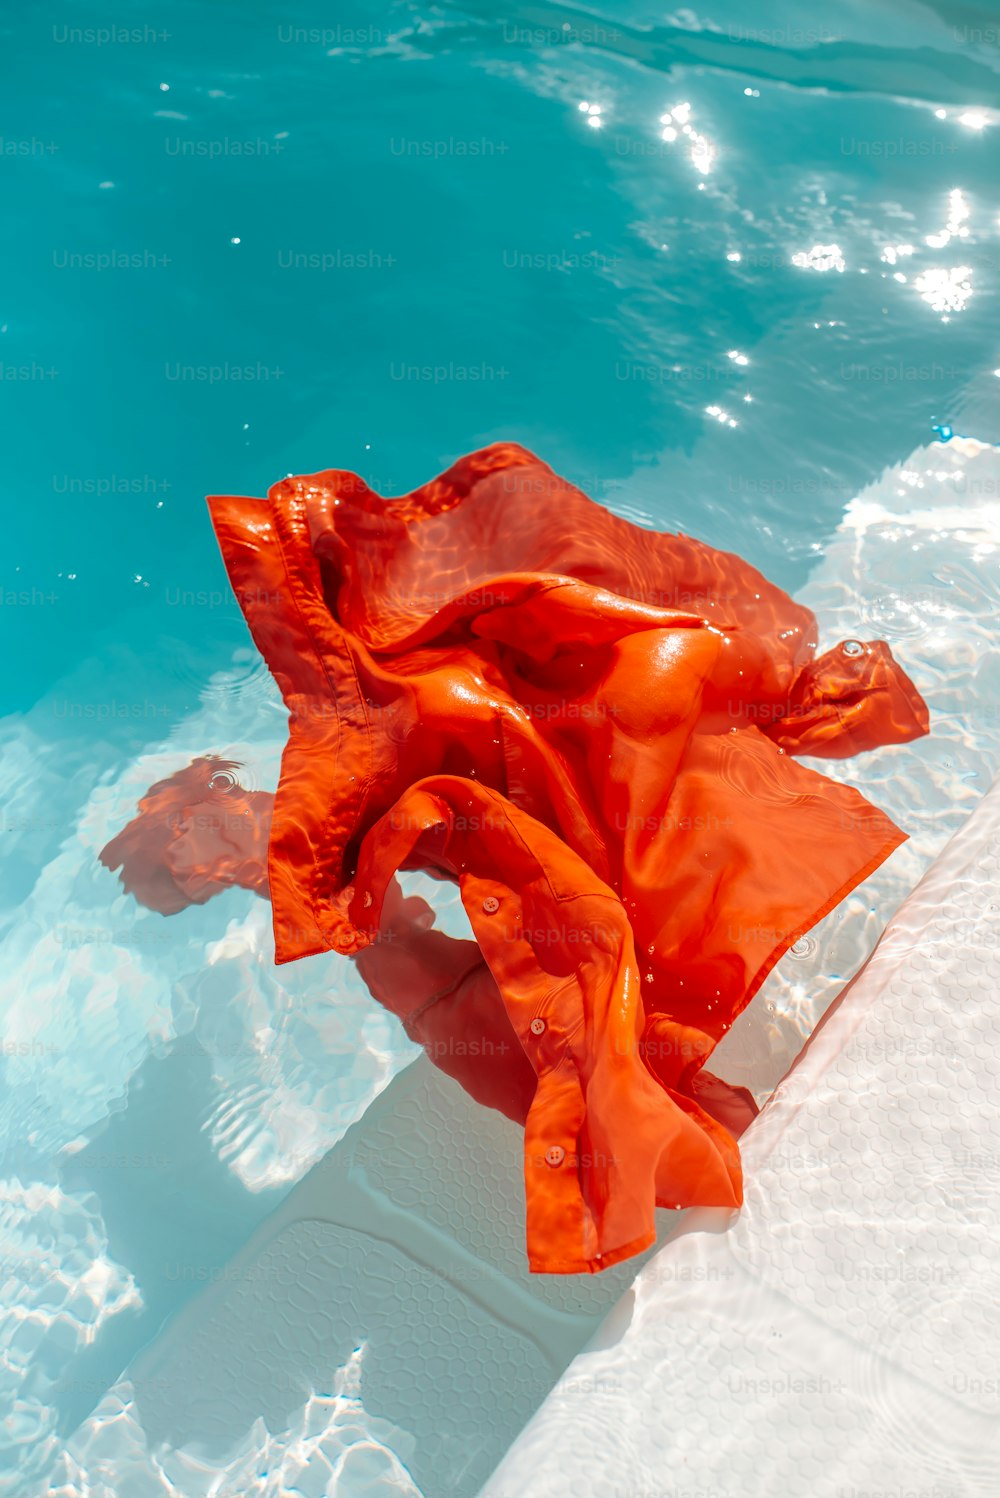 Un paño naranja flotando en un charco de agua